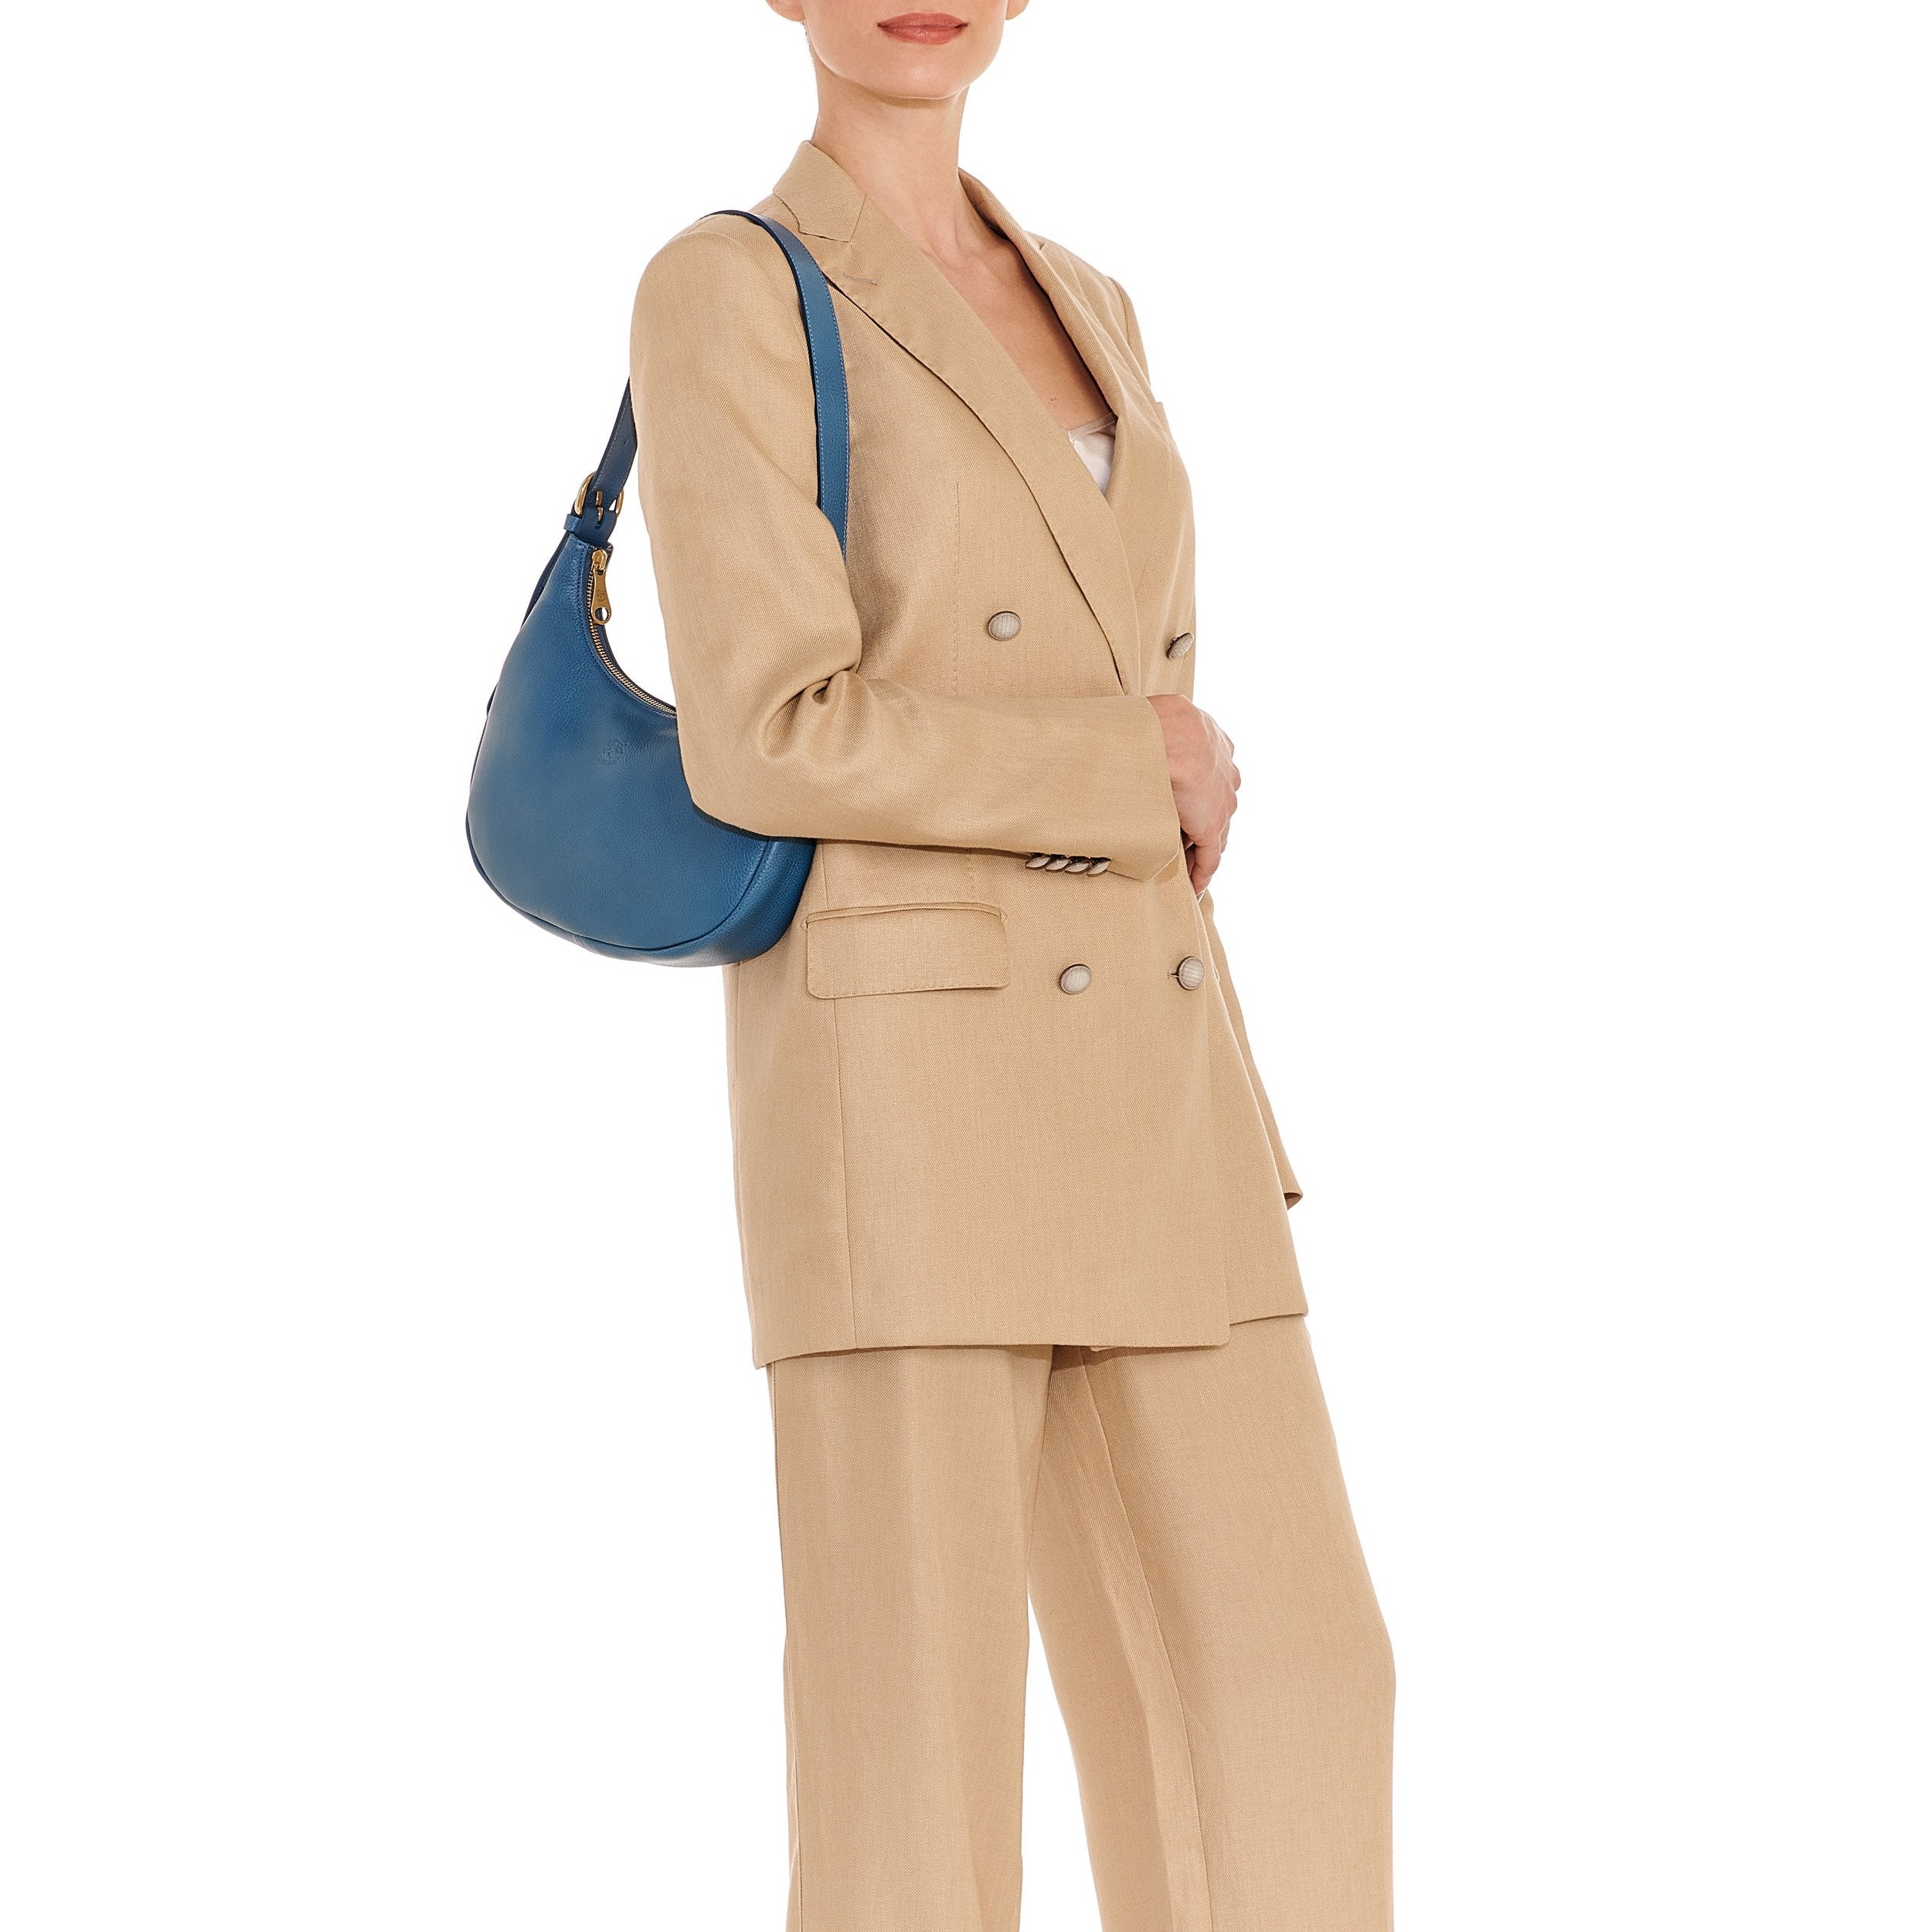 Belcanto | Women's Shoulder Bag in Leather color Blue Denim